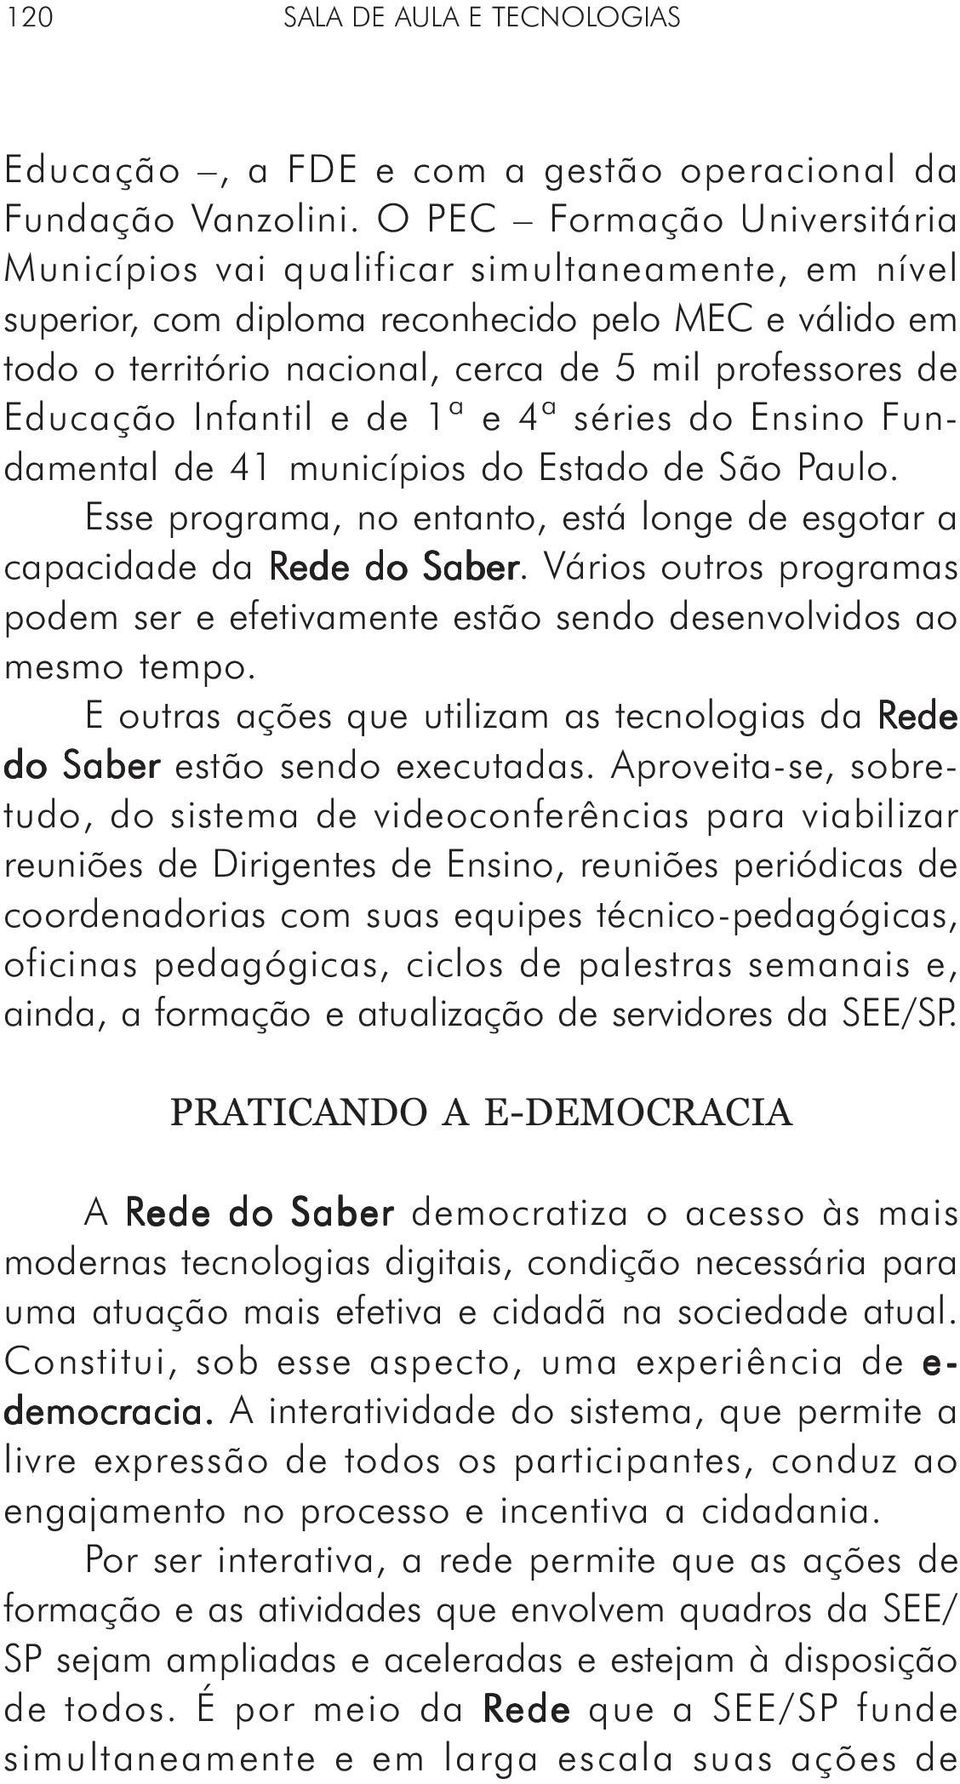 Educação Infantil e de 1ª e 4ª séries do Ensino Fundamental de 41 municípios do Estado de São Paulo. Esse programa, no entanto, está longe de esgotar a capacidade da Rede do Saber.